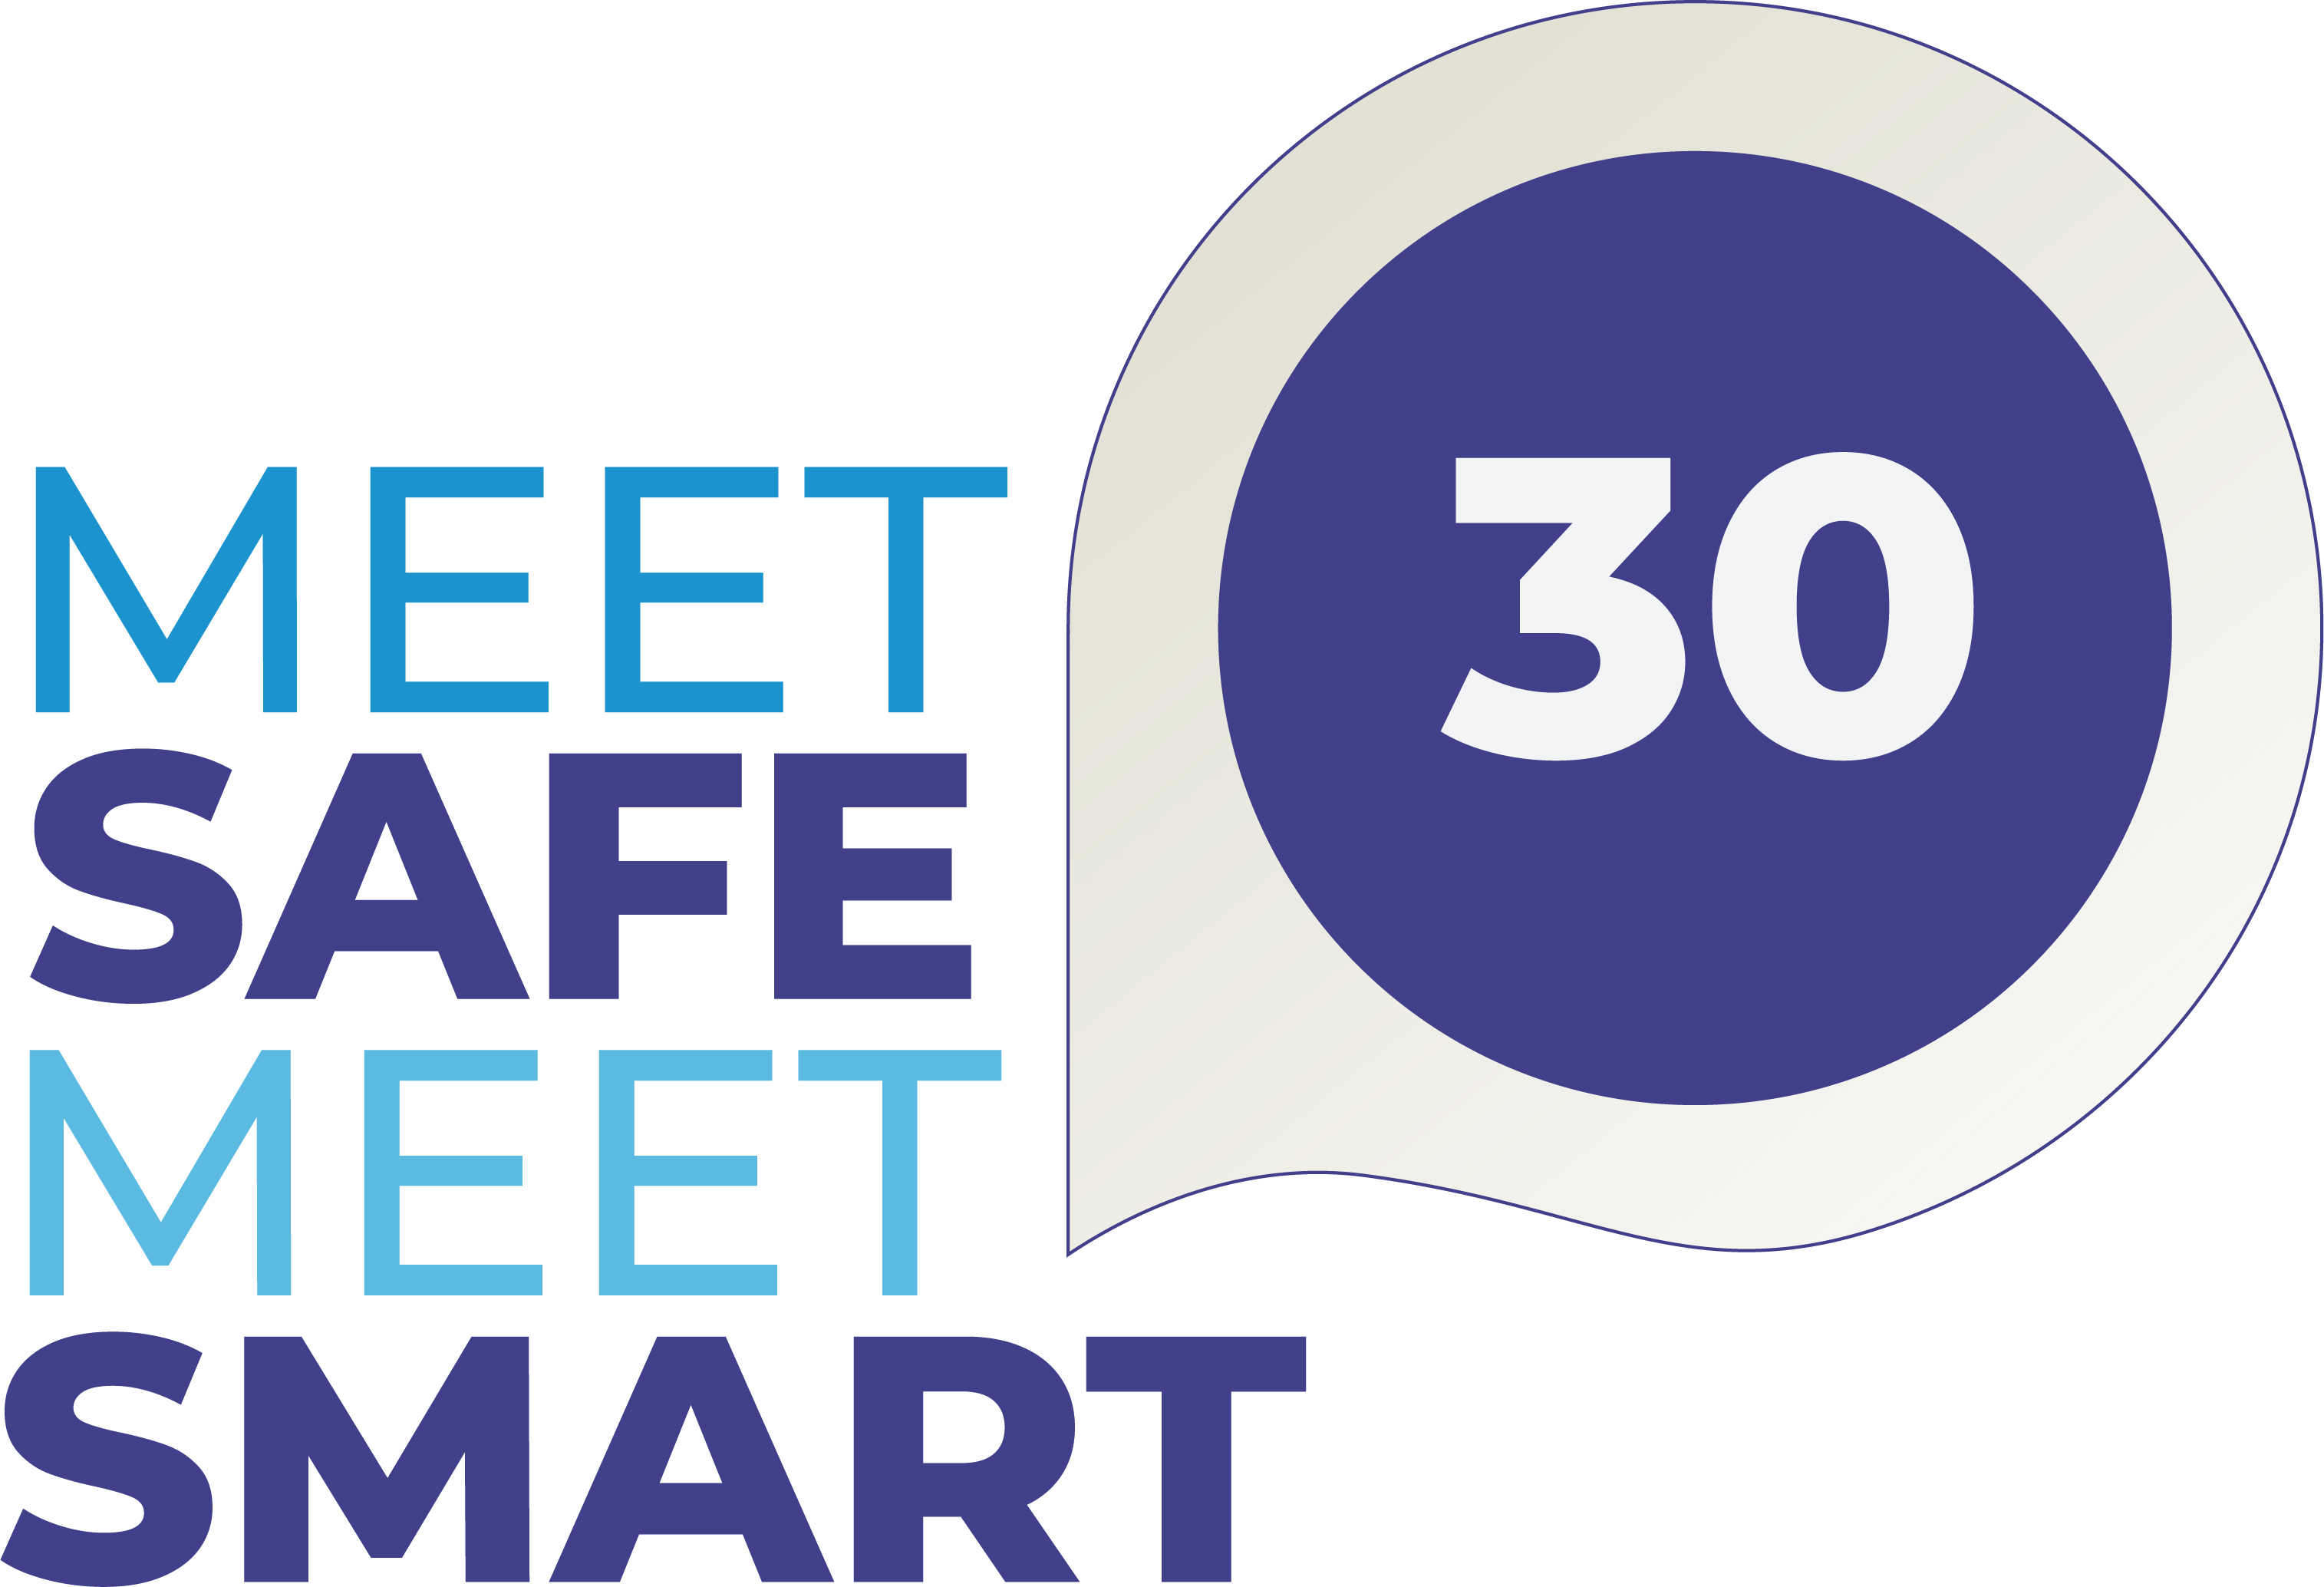 Meet Safe Meet Smart logo 